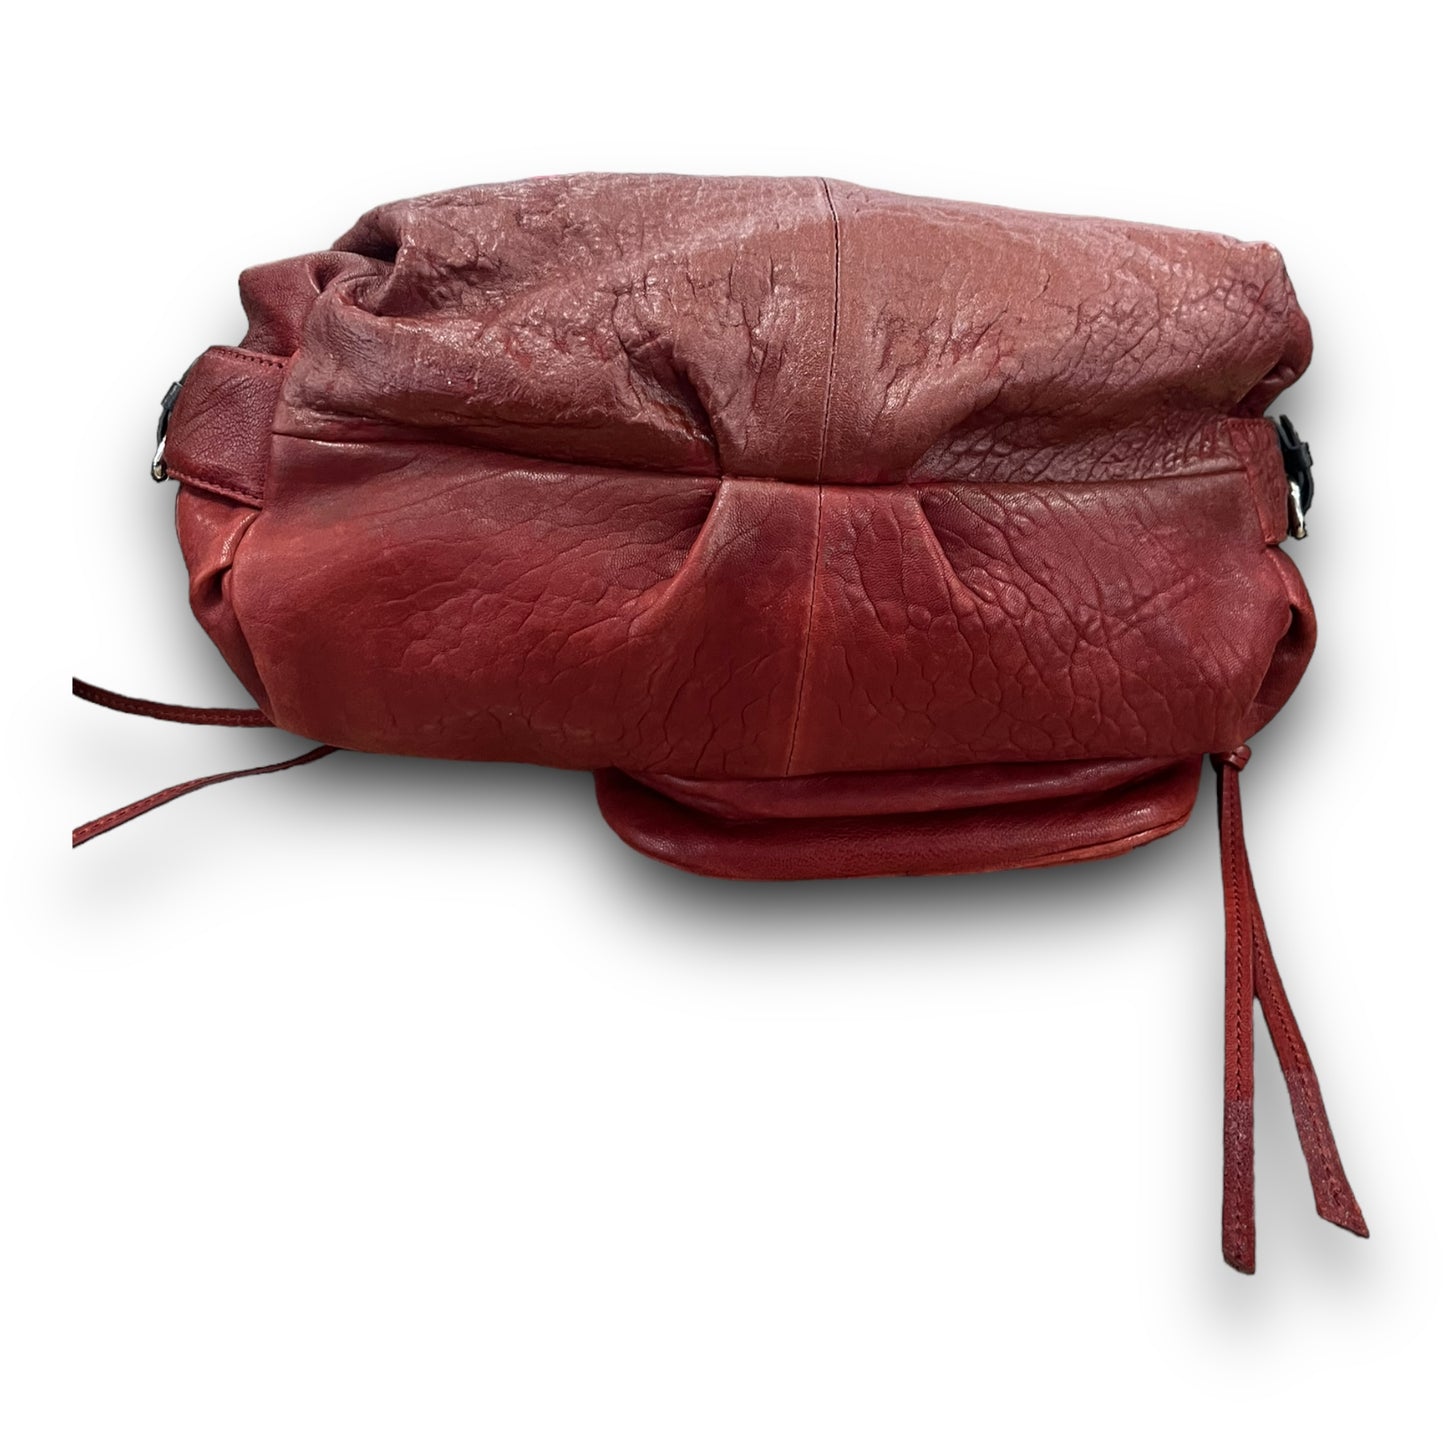 Handbag Designer By Lamb  Size: Medium